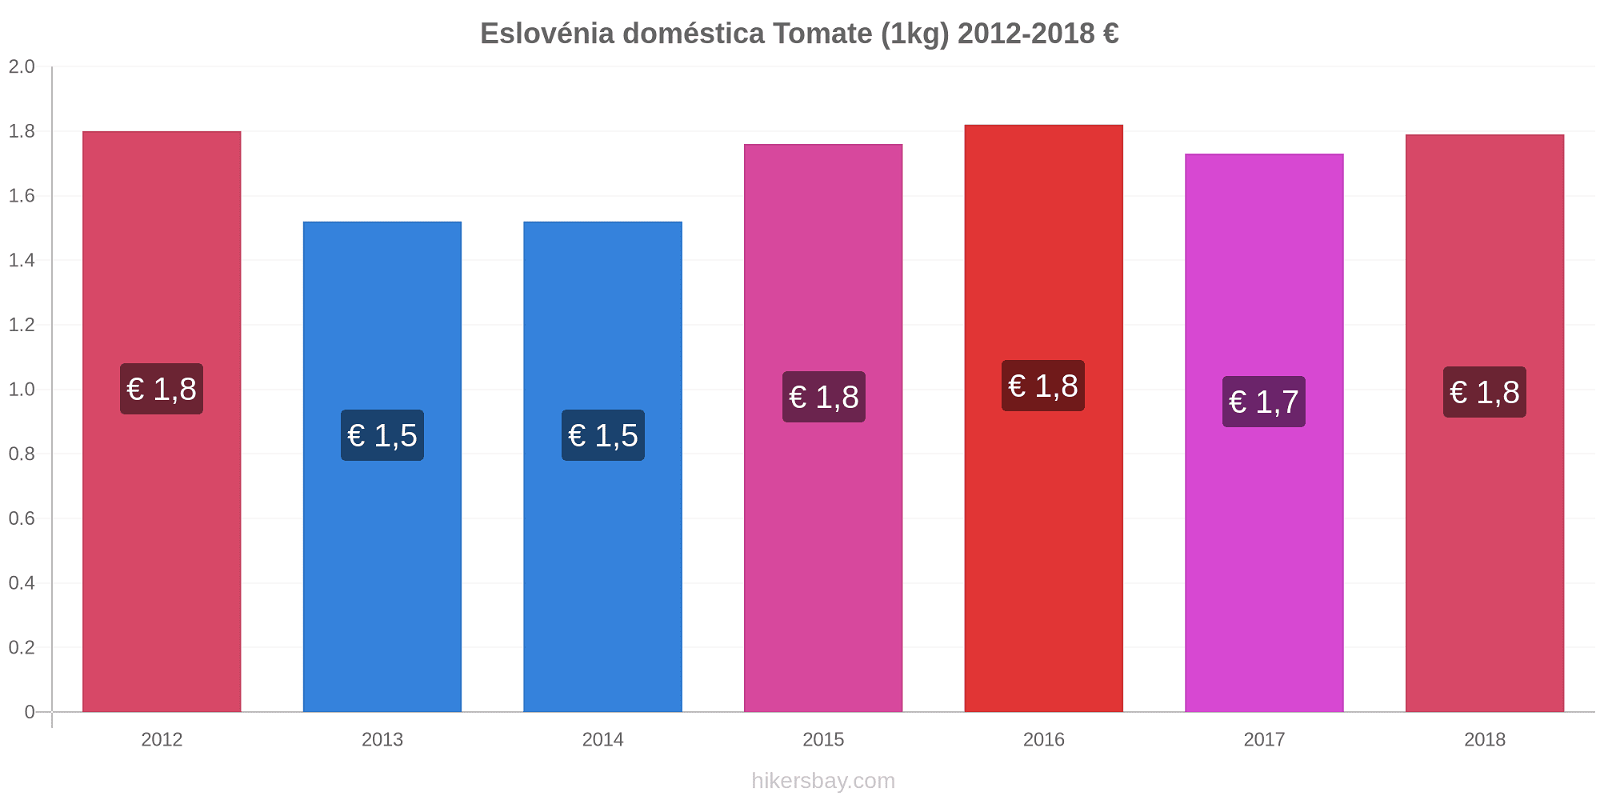 Eslovénia doméstica variação de preço Tomate (1kg) hikersbay.com